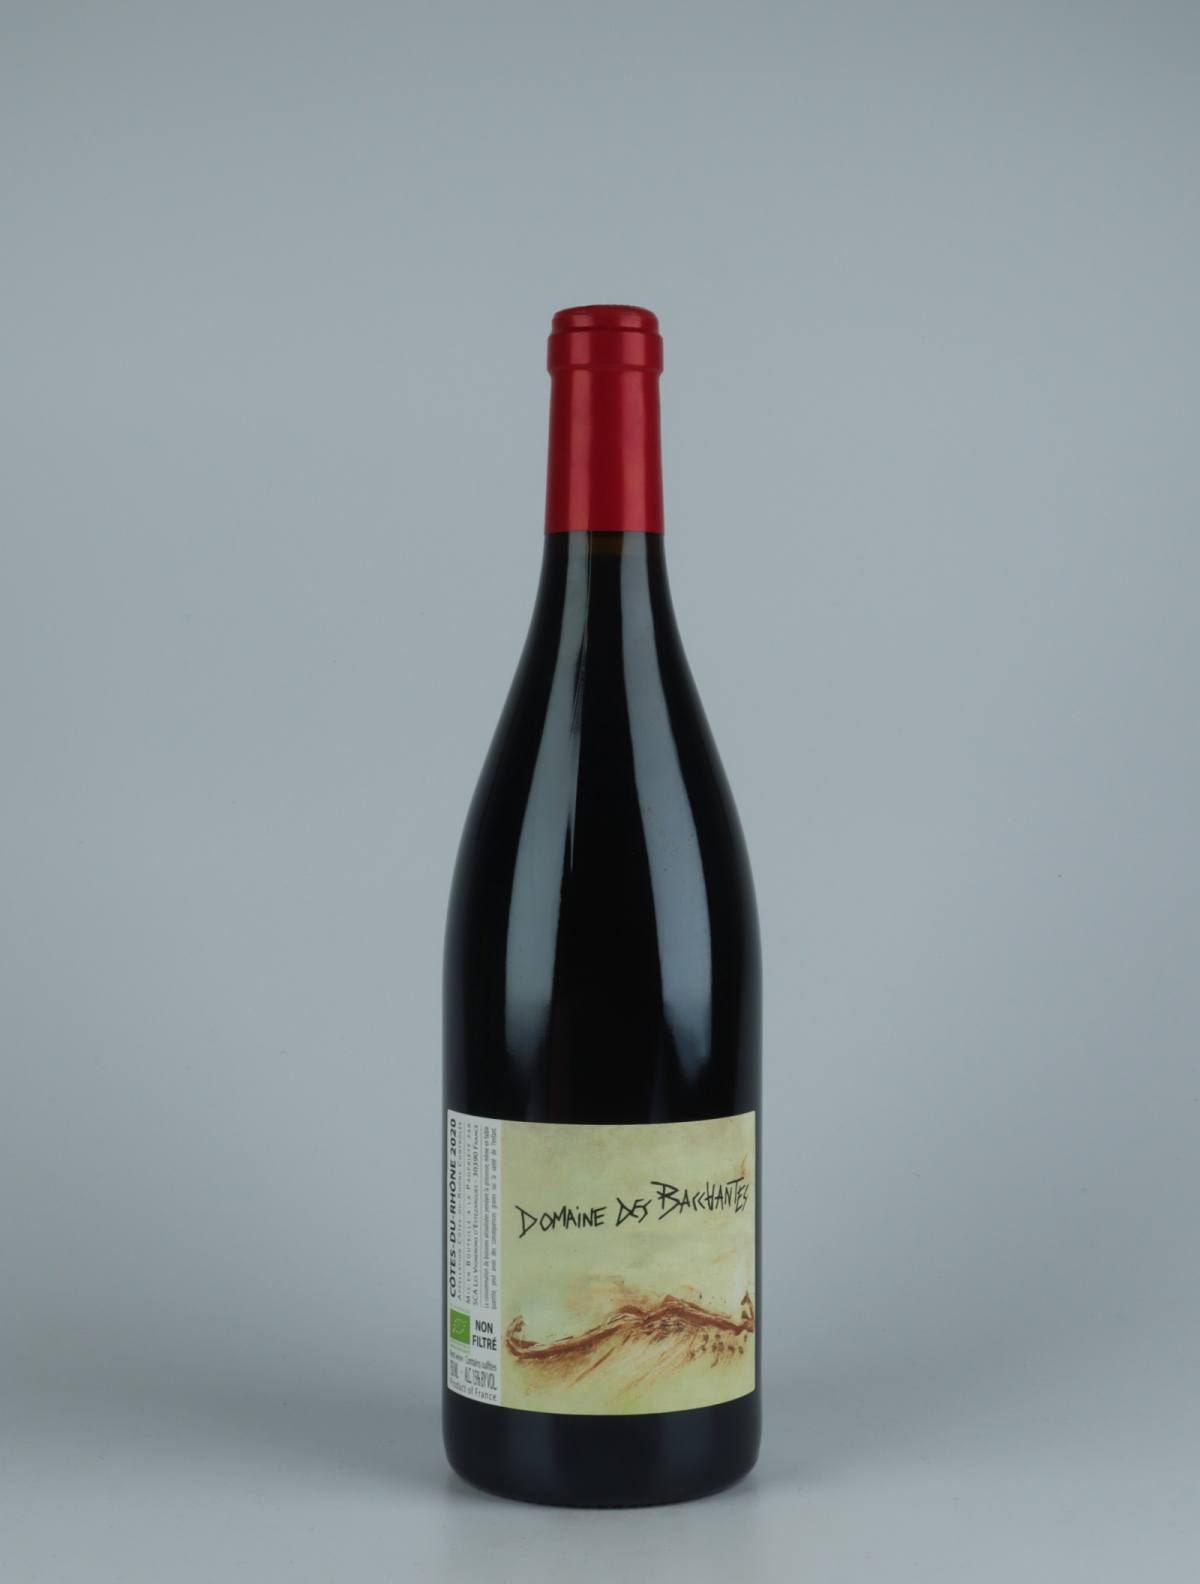 A bottle 2020 Côtes du Rhône - Domaine des Bacchantes Red wine from Les Vignerons d’Estézargues, Rhône in France